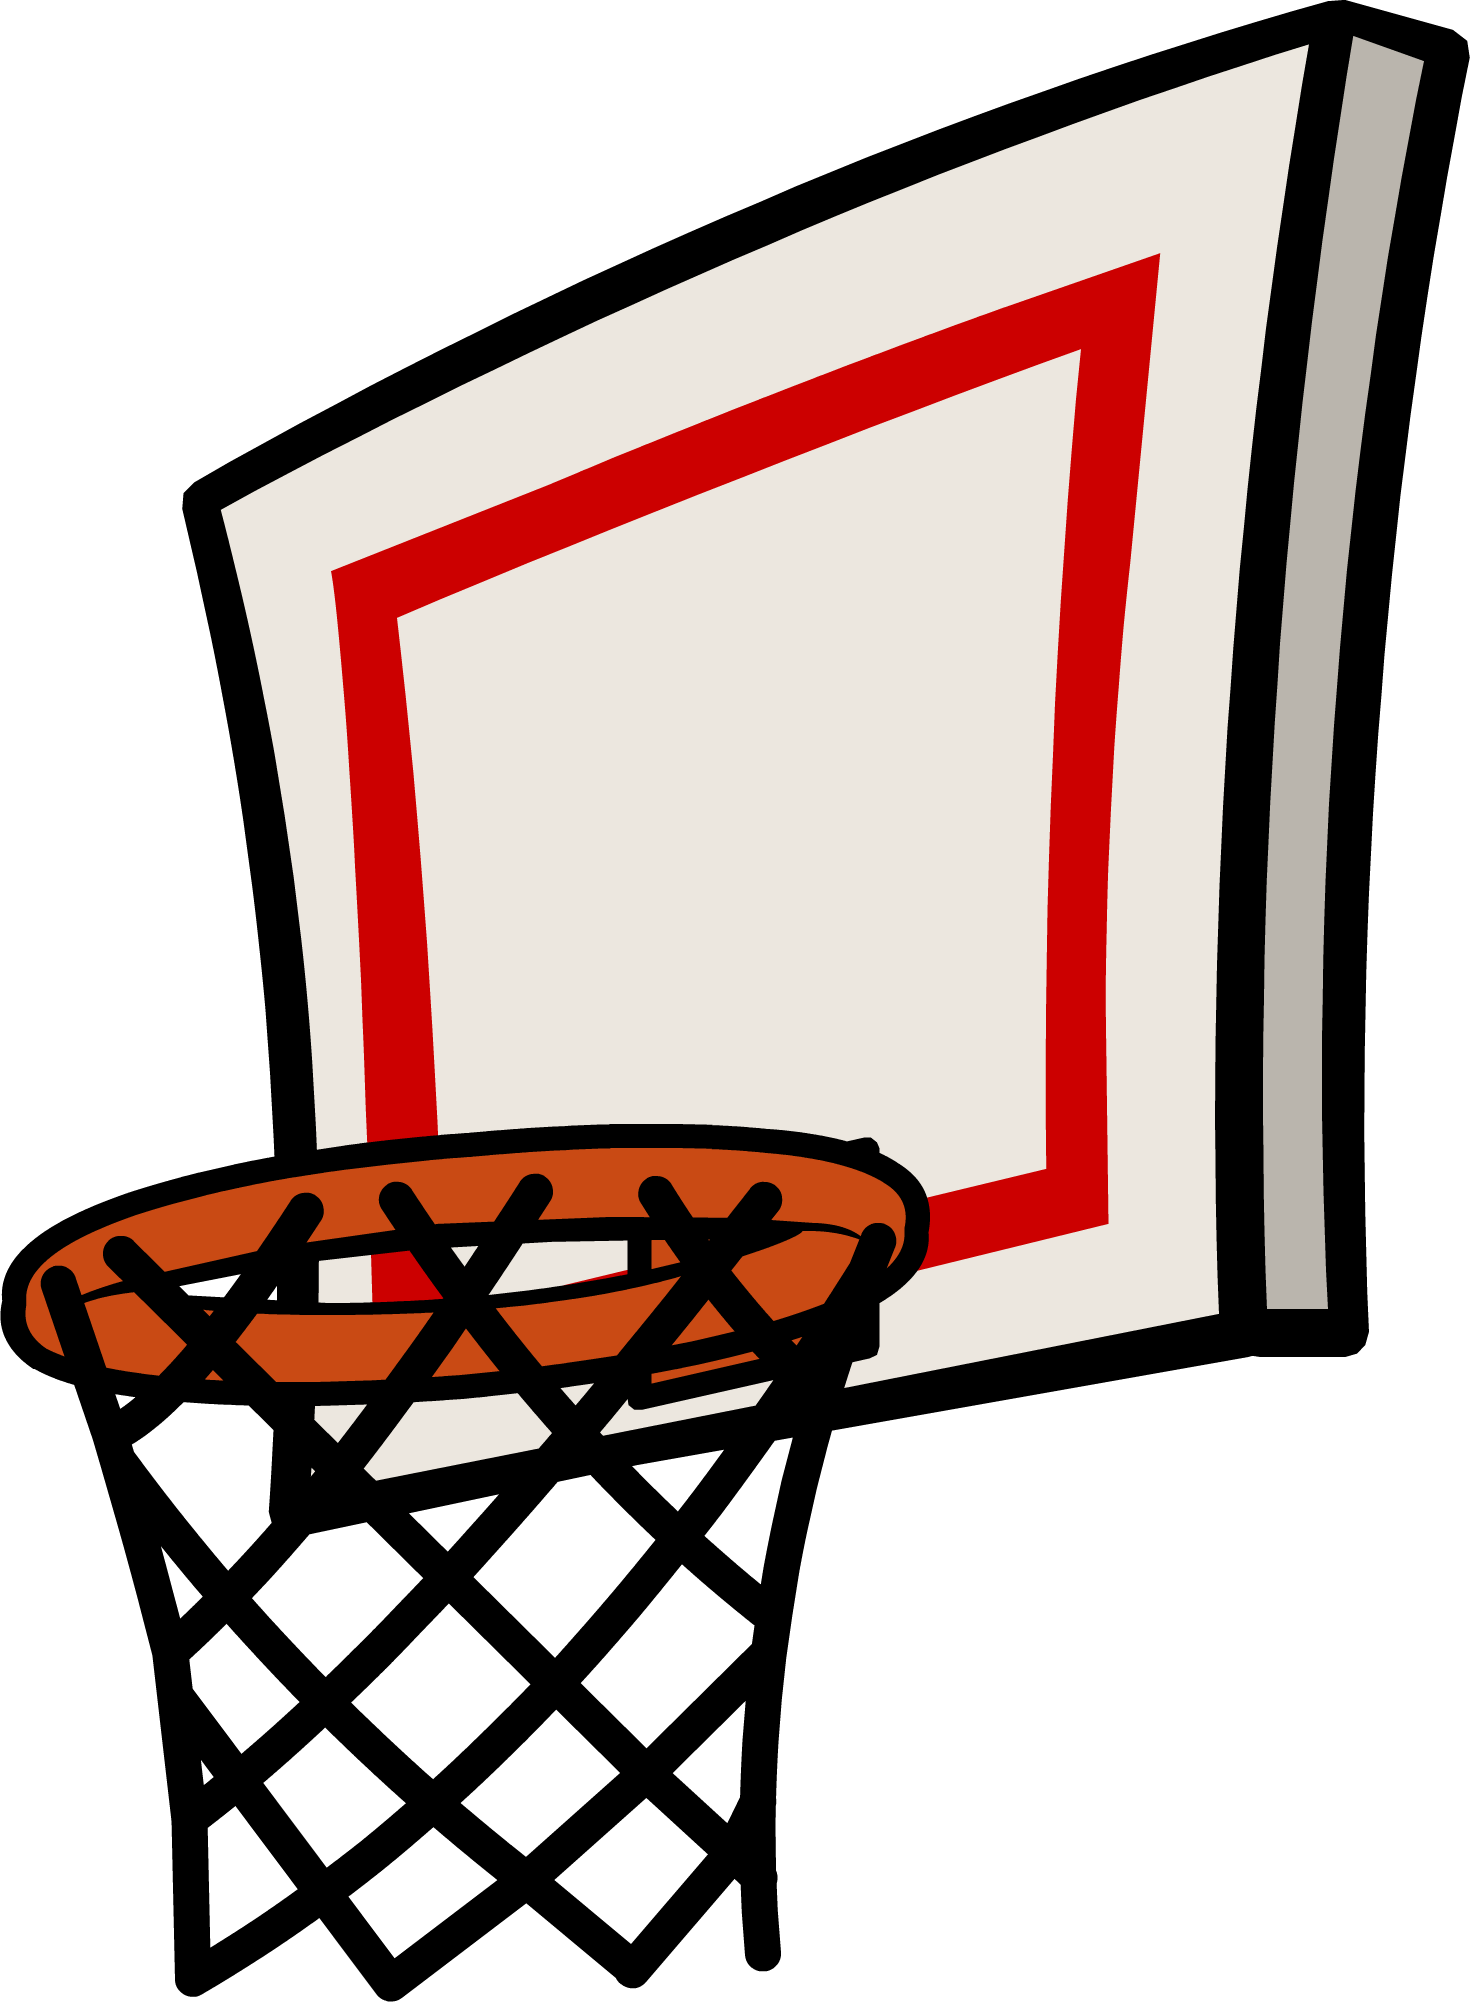 Баскетбольное кольцо PNG Image